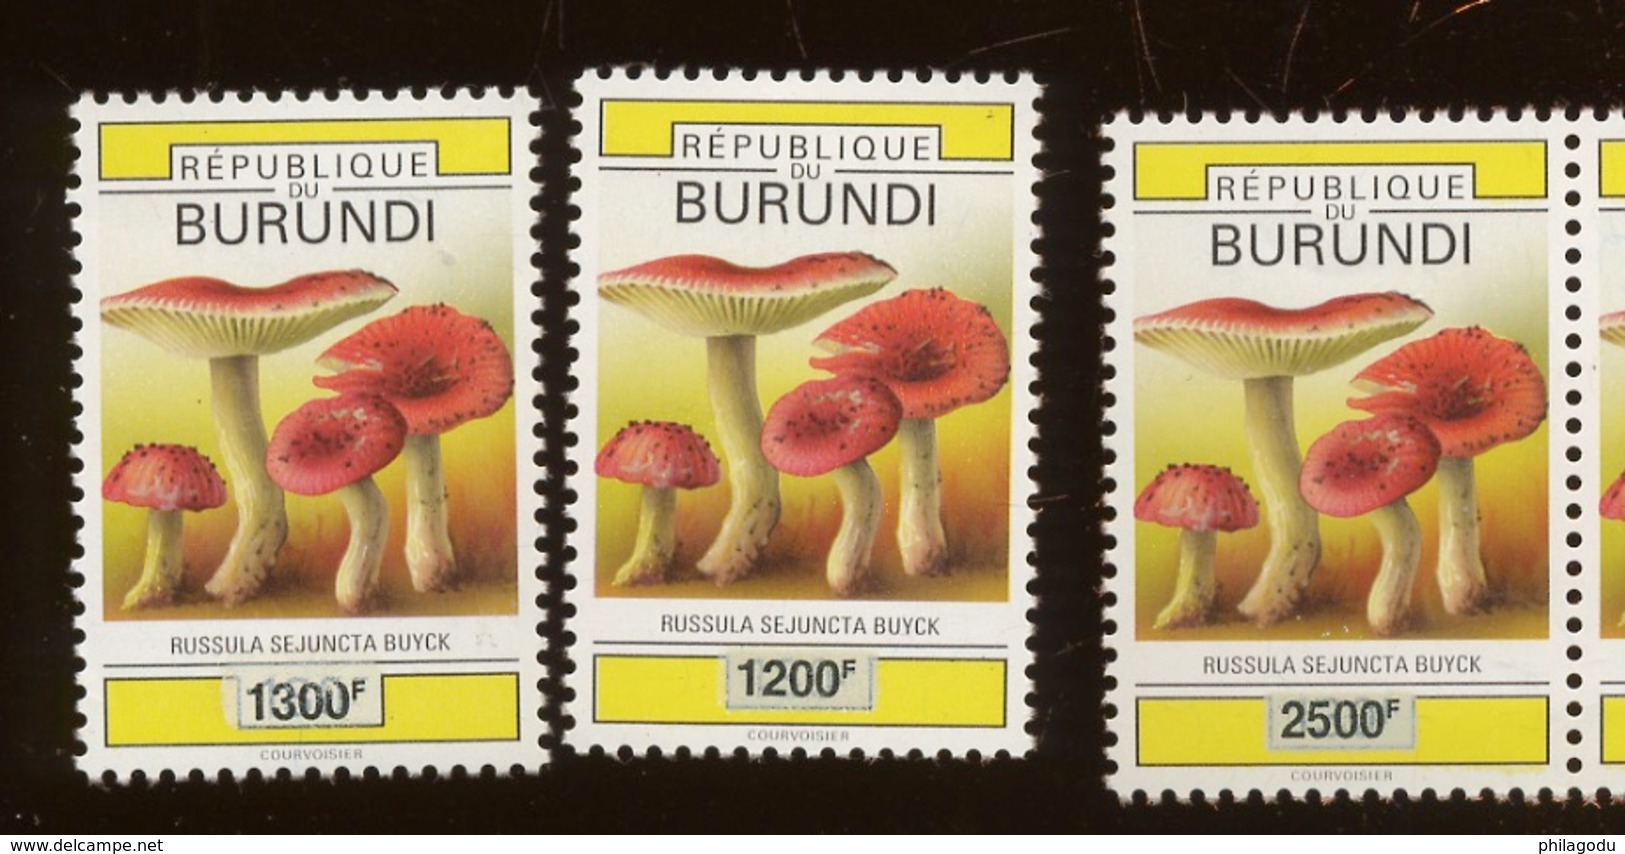 2008 3 Val Burundi Surchargées. CHAMPIGNONS Mushroom. Pilzen.  Cote 50,-euro La Série 3 Val - Neufs